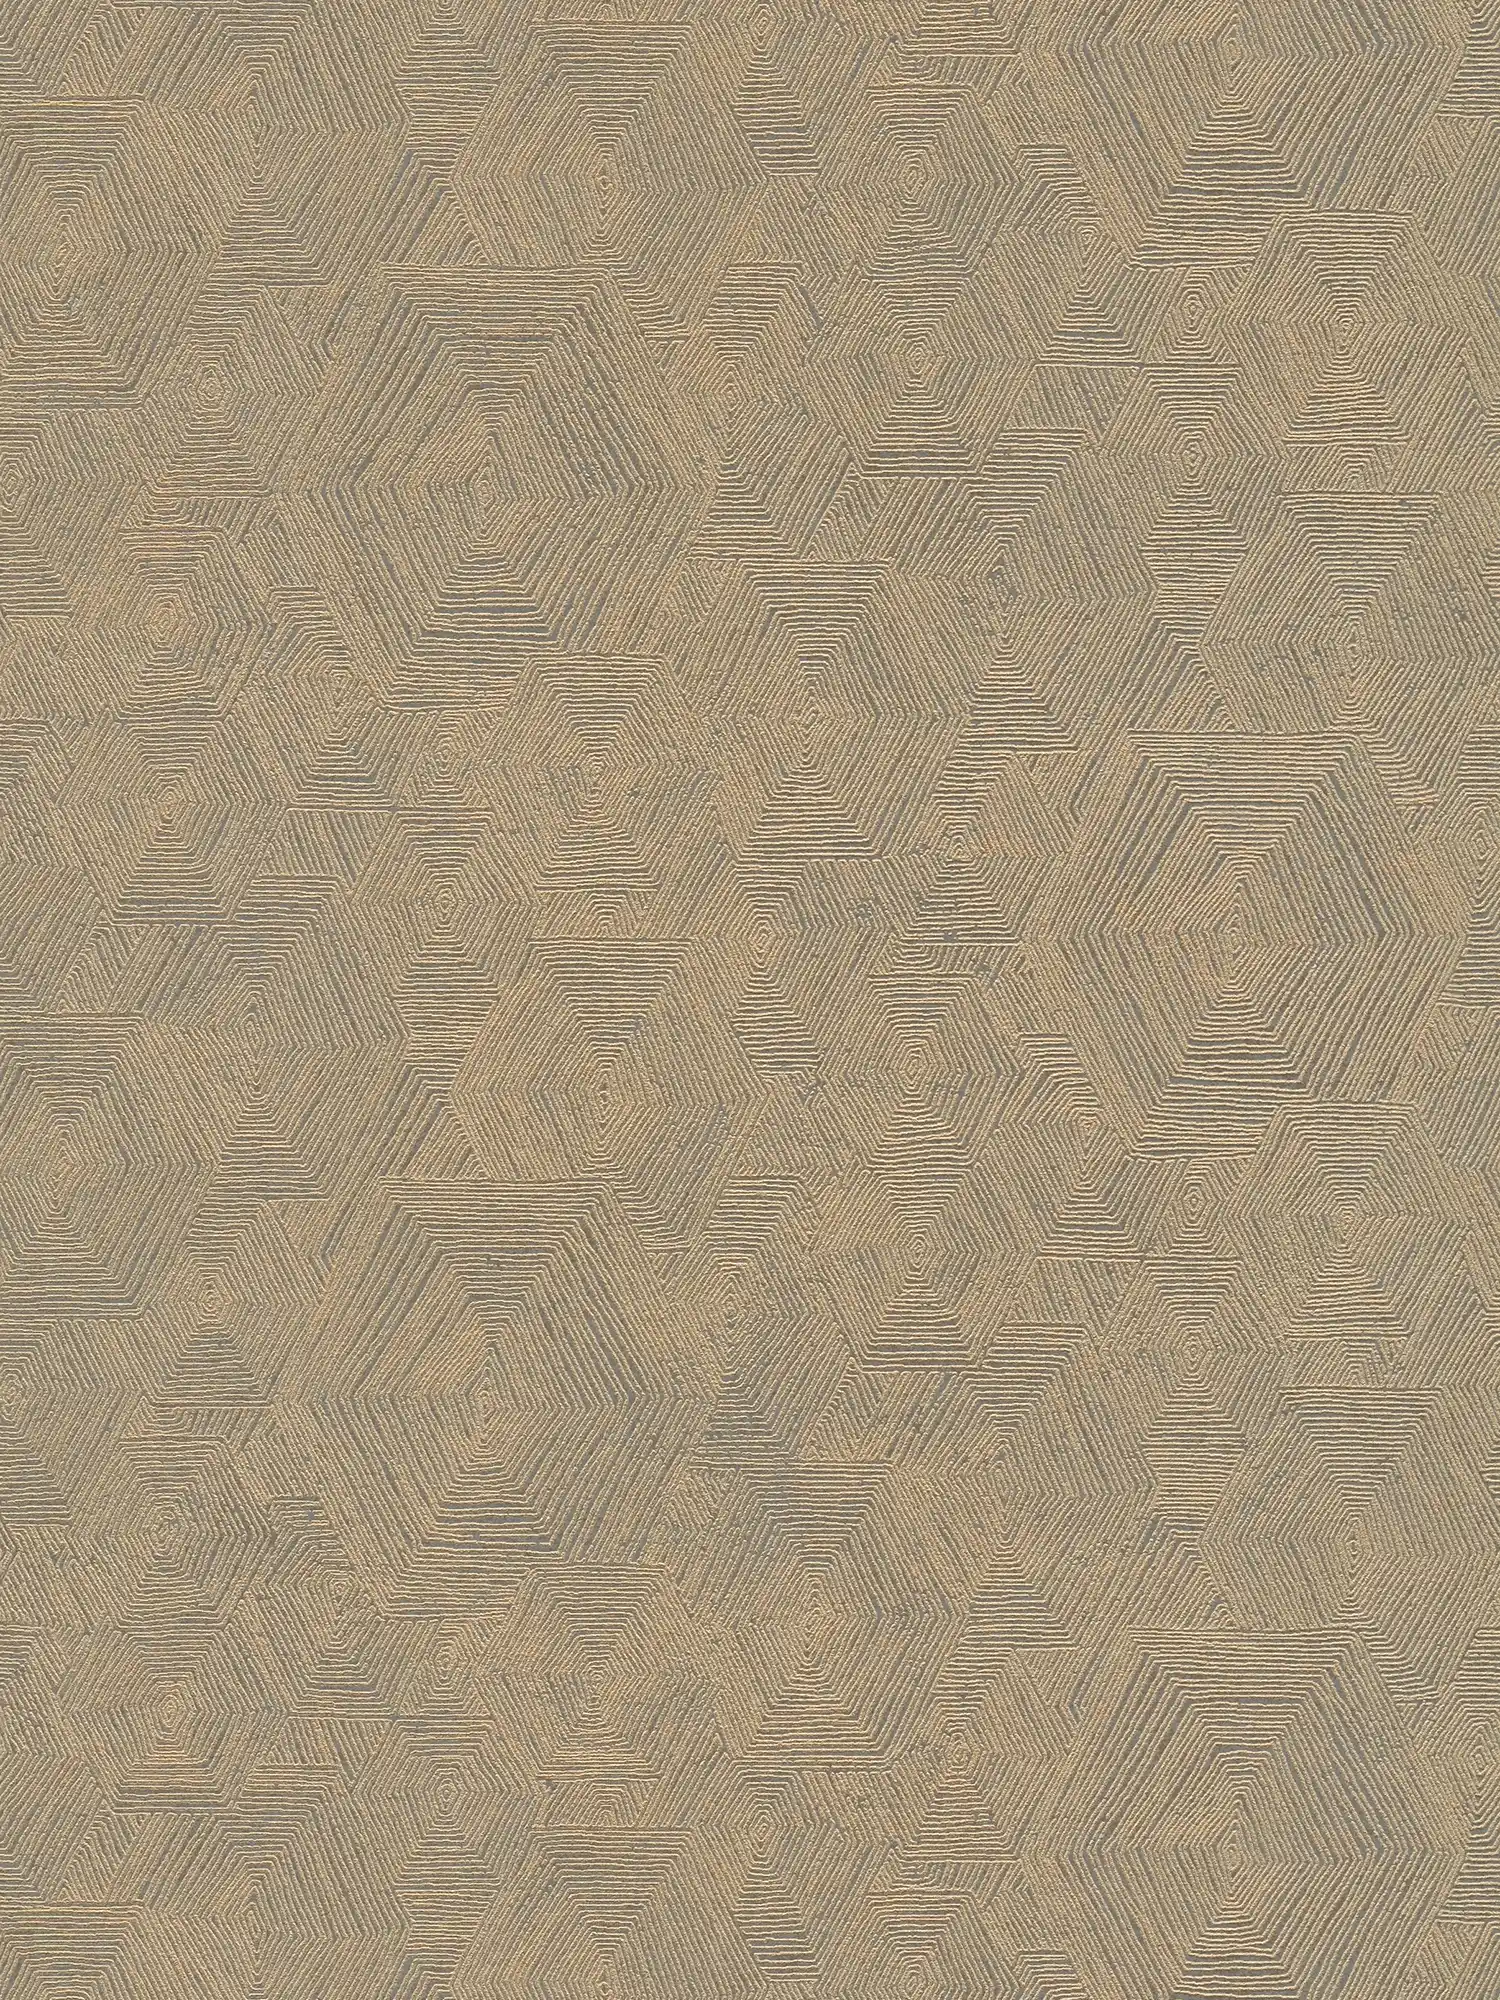 Melierte Tapete mit Grafik Struktur im Ethno Look – Braun, Metallic
